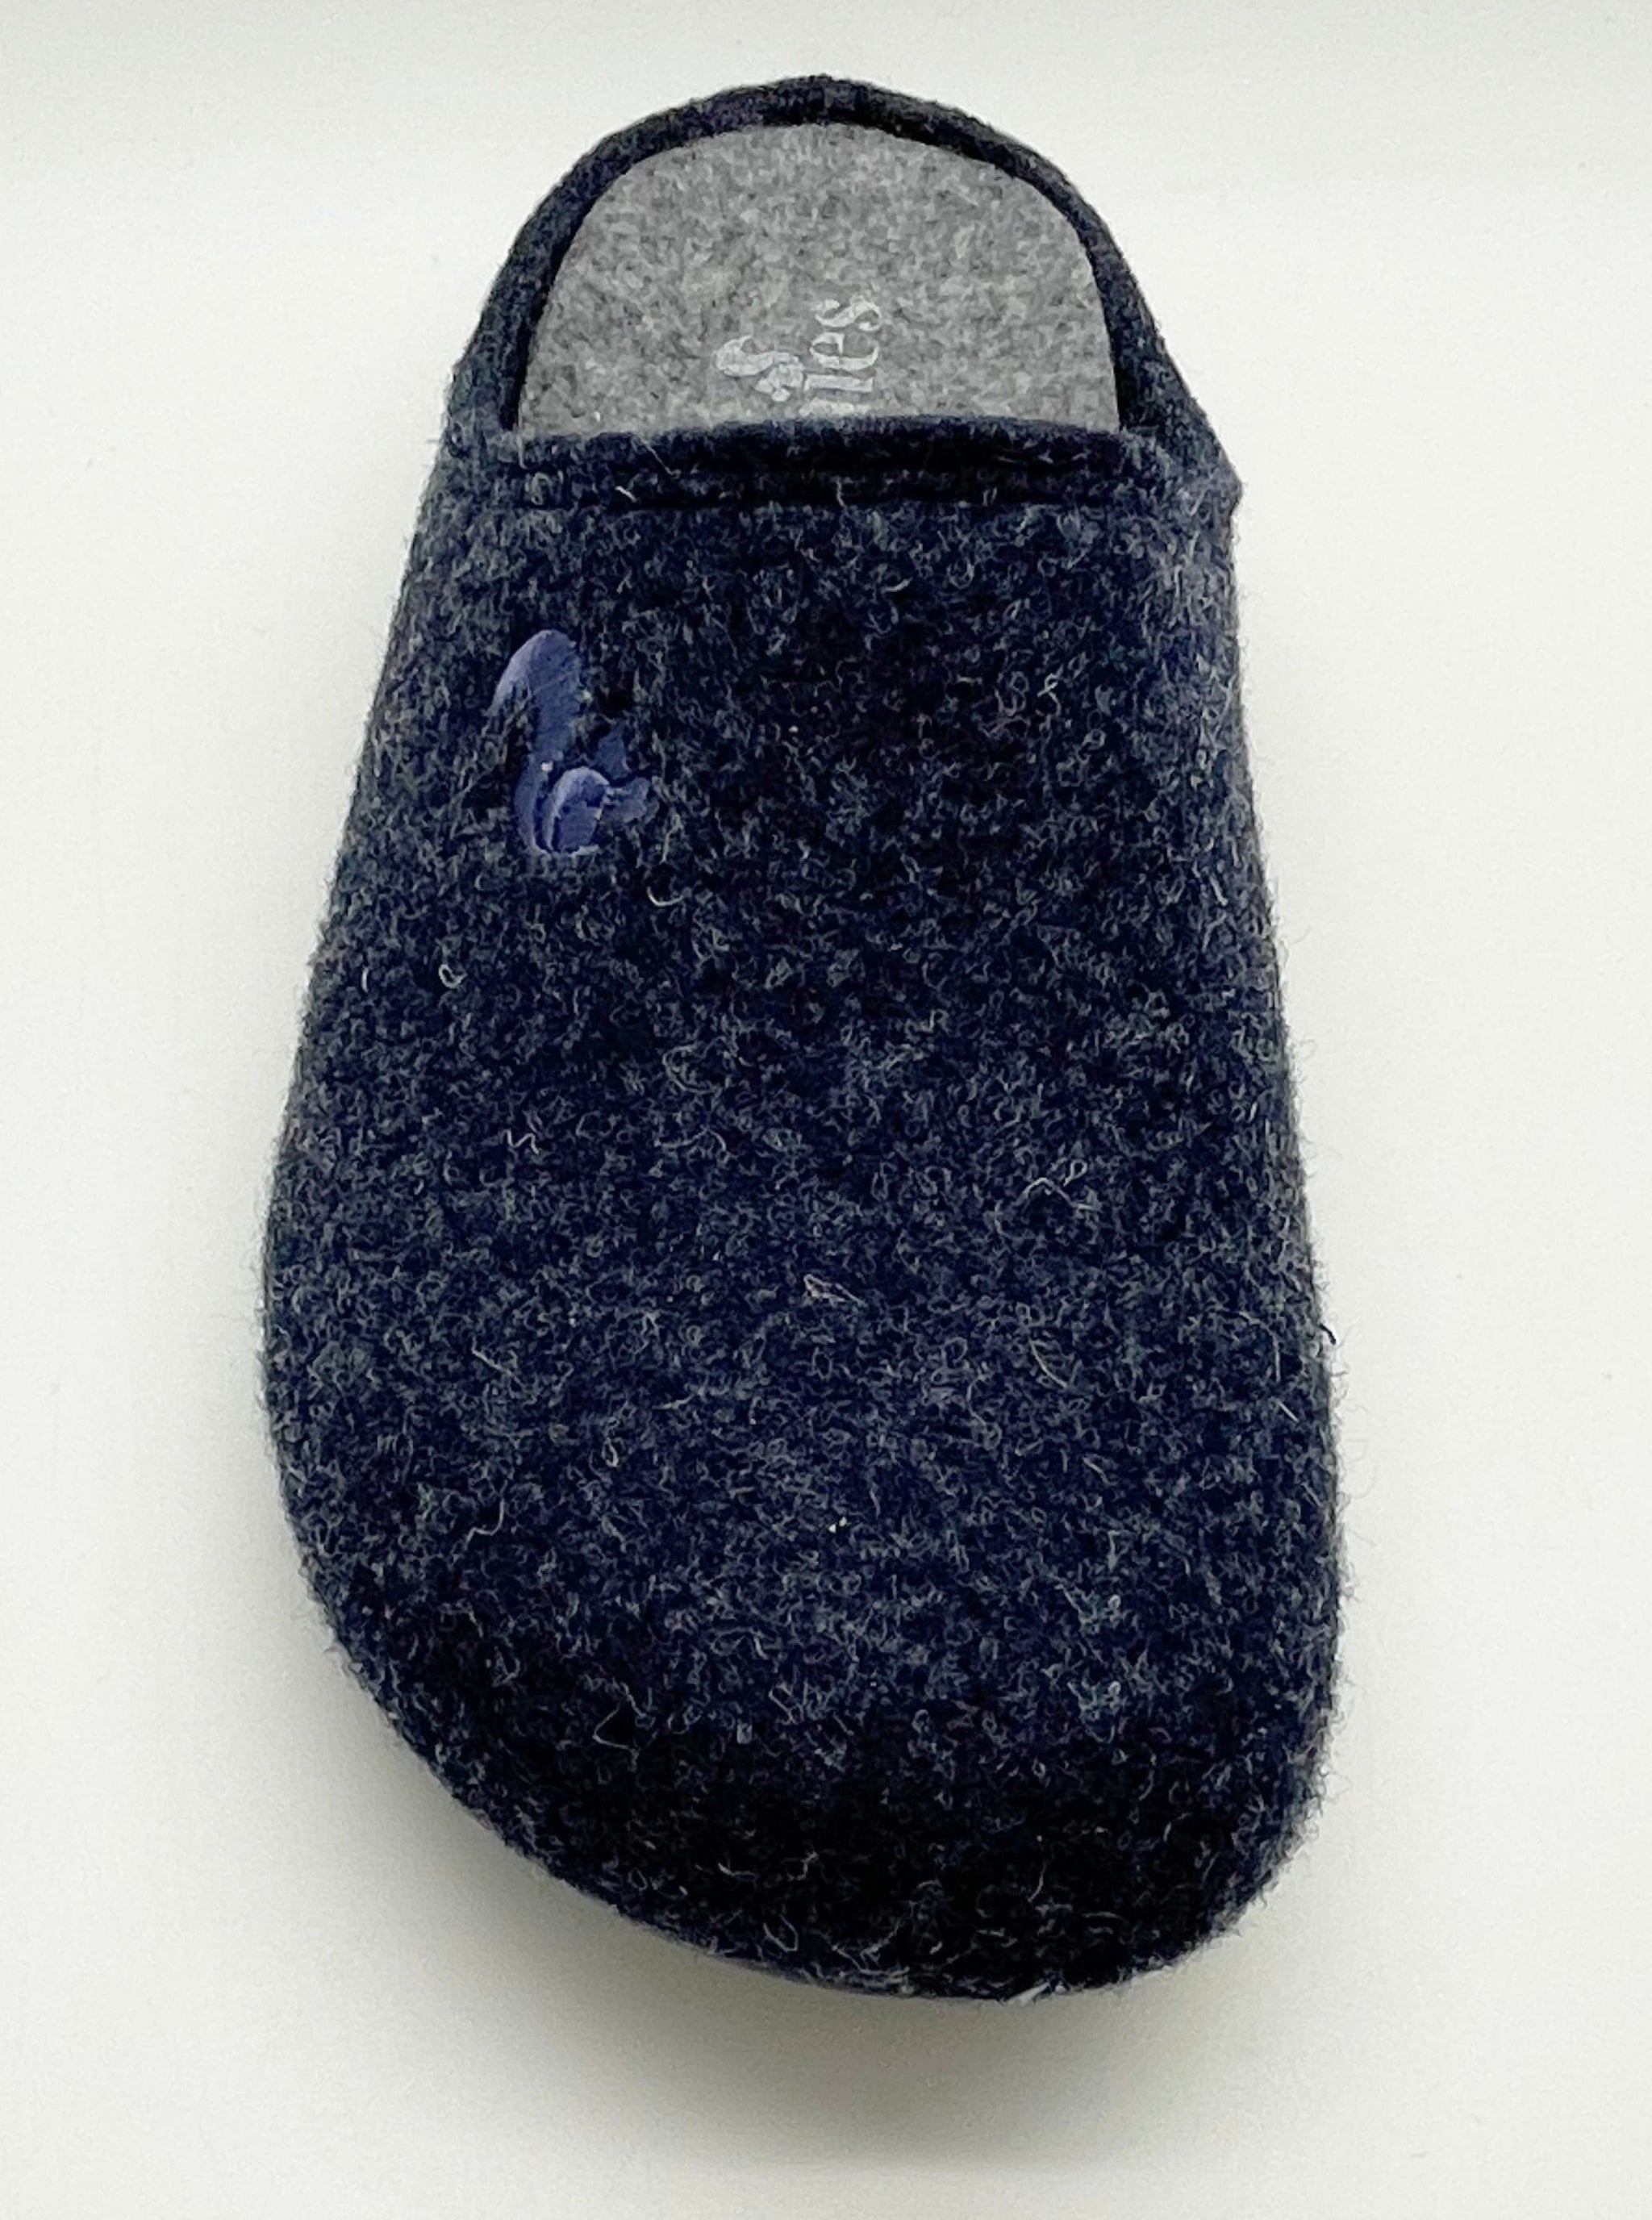 NAT 2 calzado thies 1856 ® PET reciclado Zapatilla vegano azul marino oscuro (W/M/X) moda sostenible moda ética